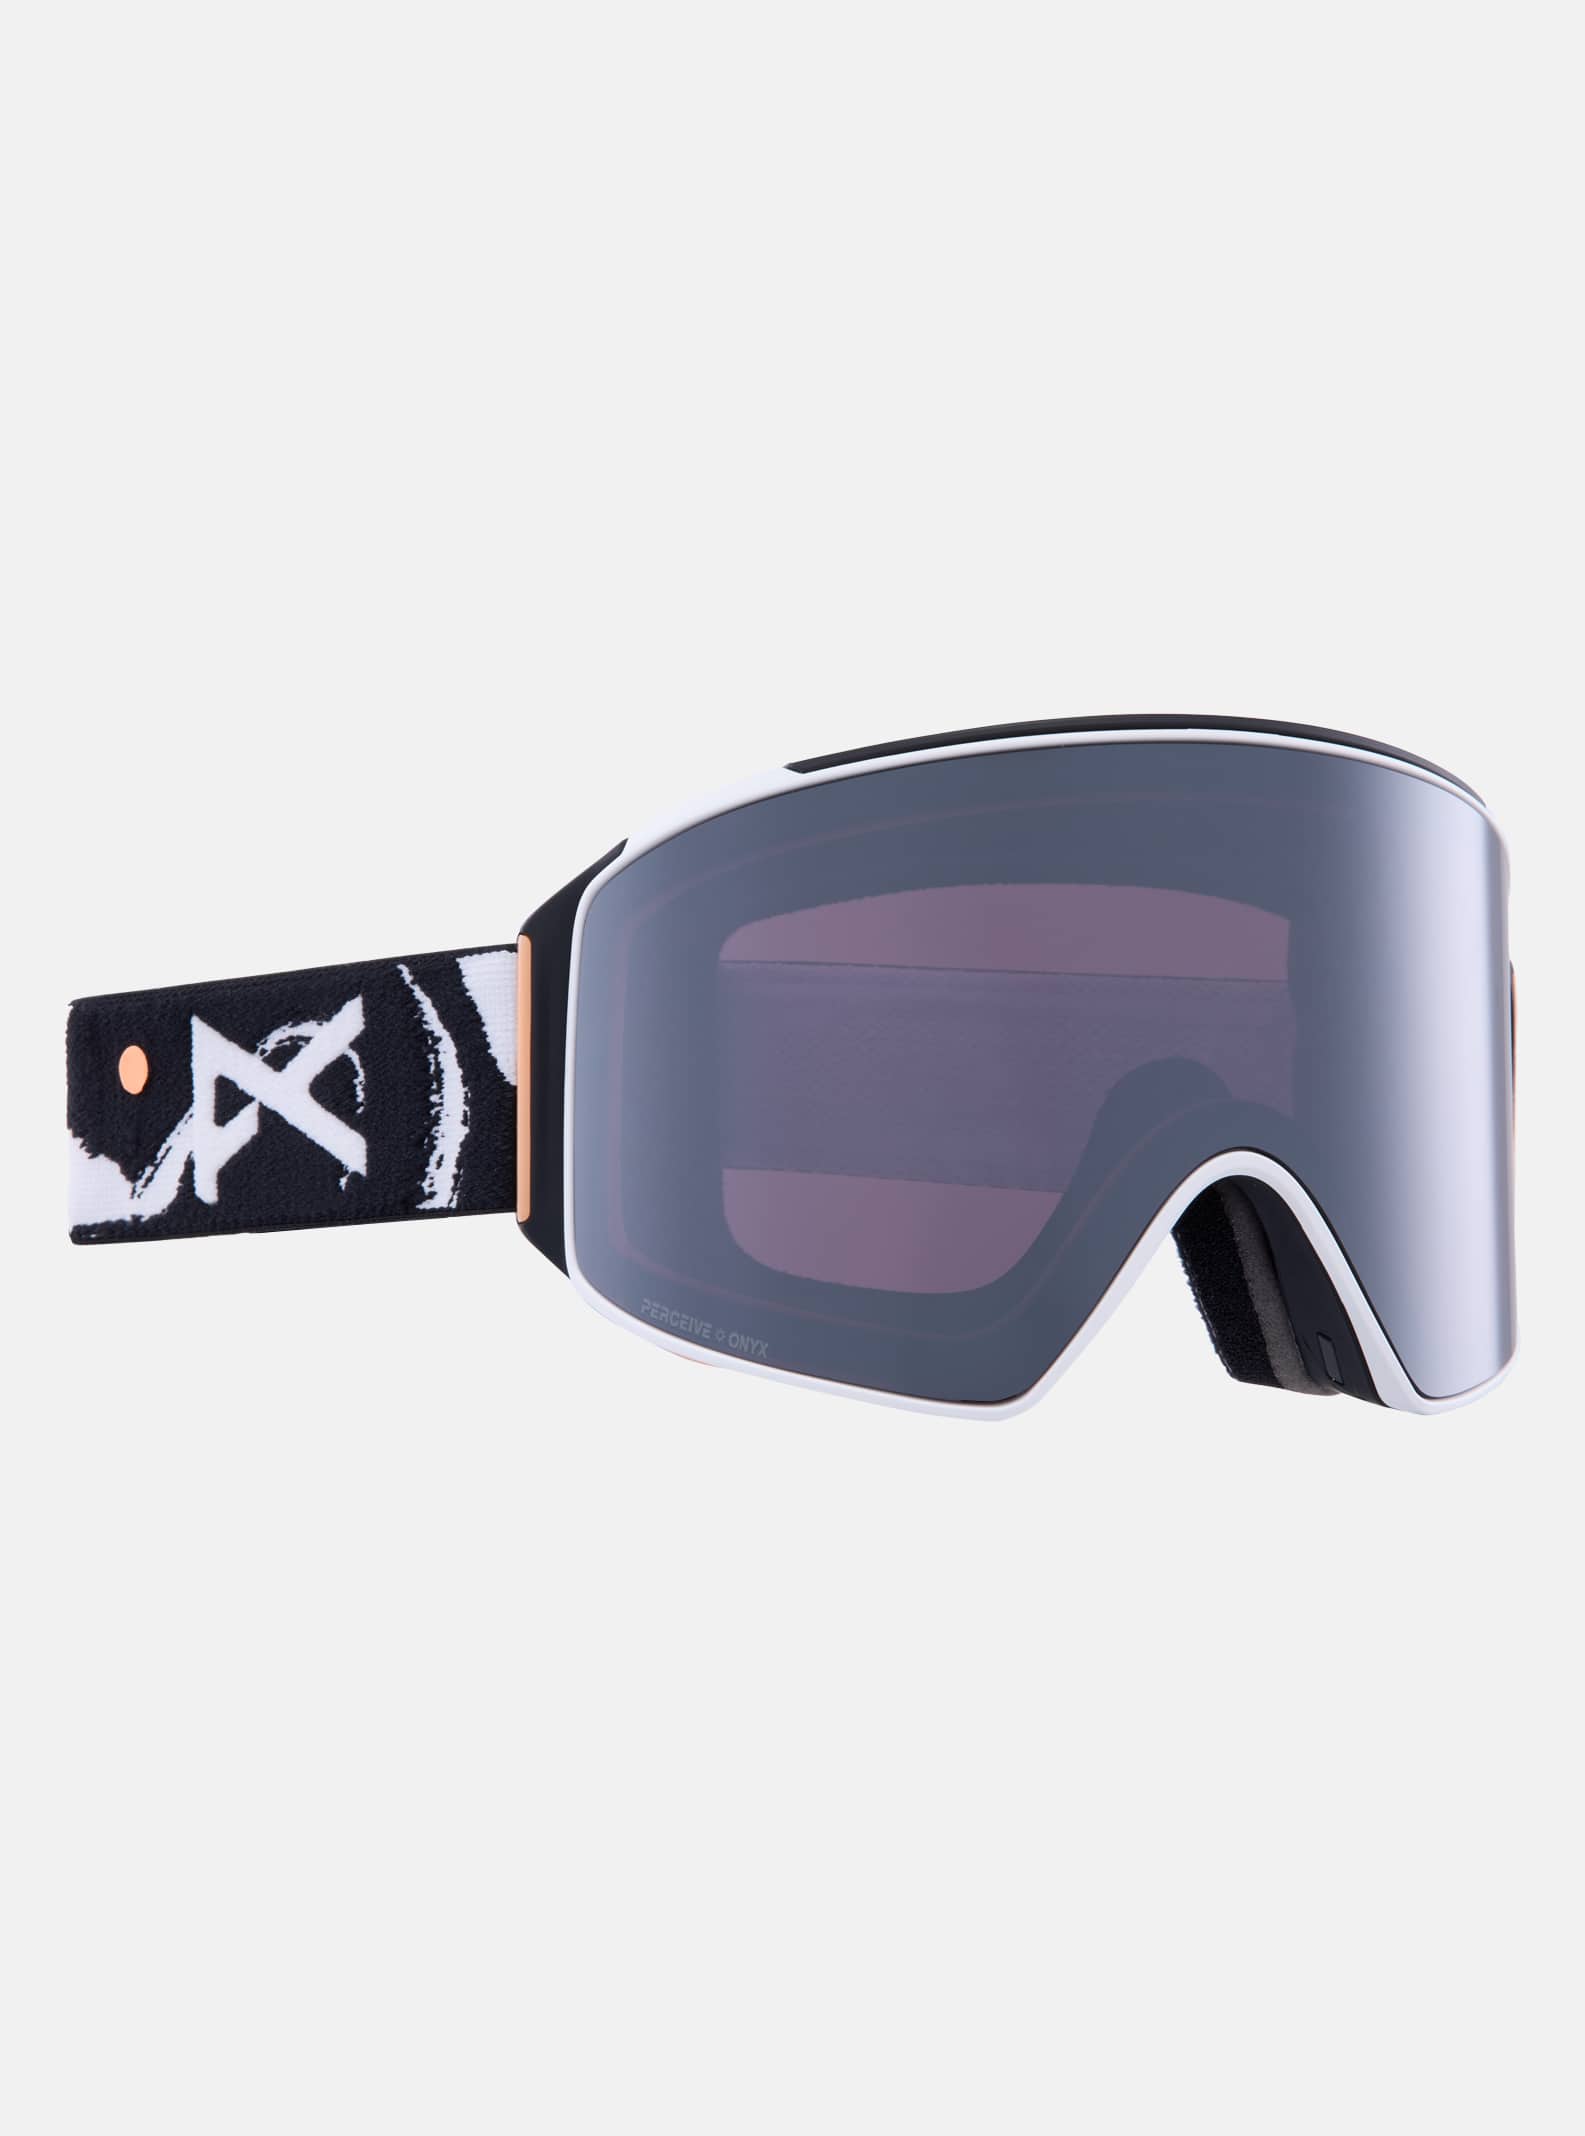 Magna-Tech®ゴーグル&レンズ | スキー&スノーボード ゴーグル | Anon 